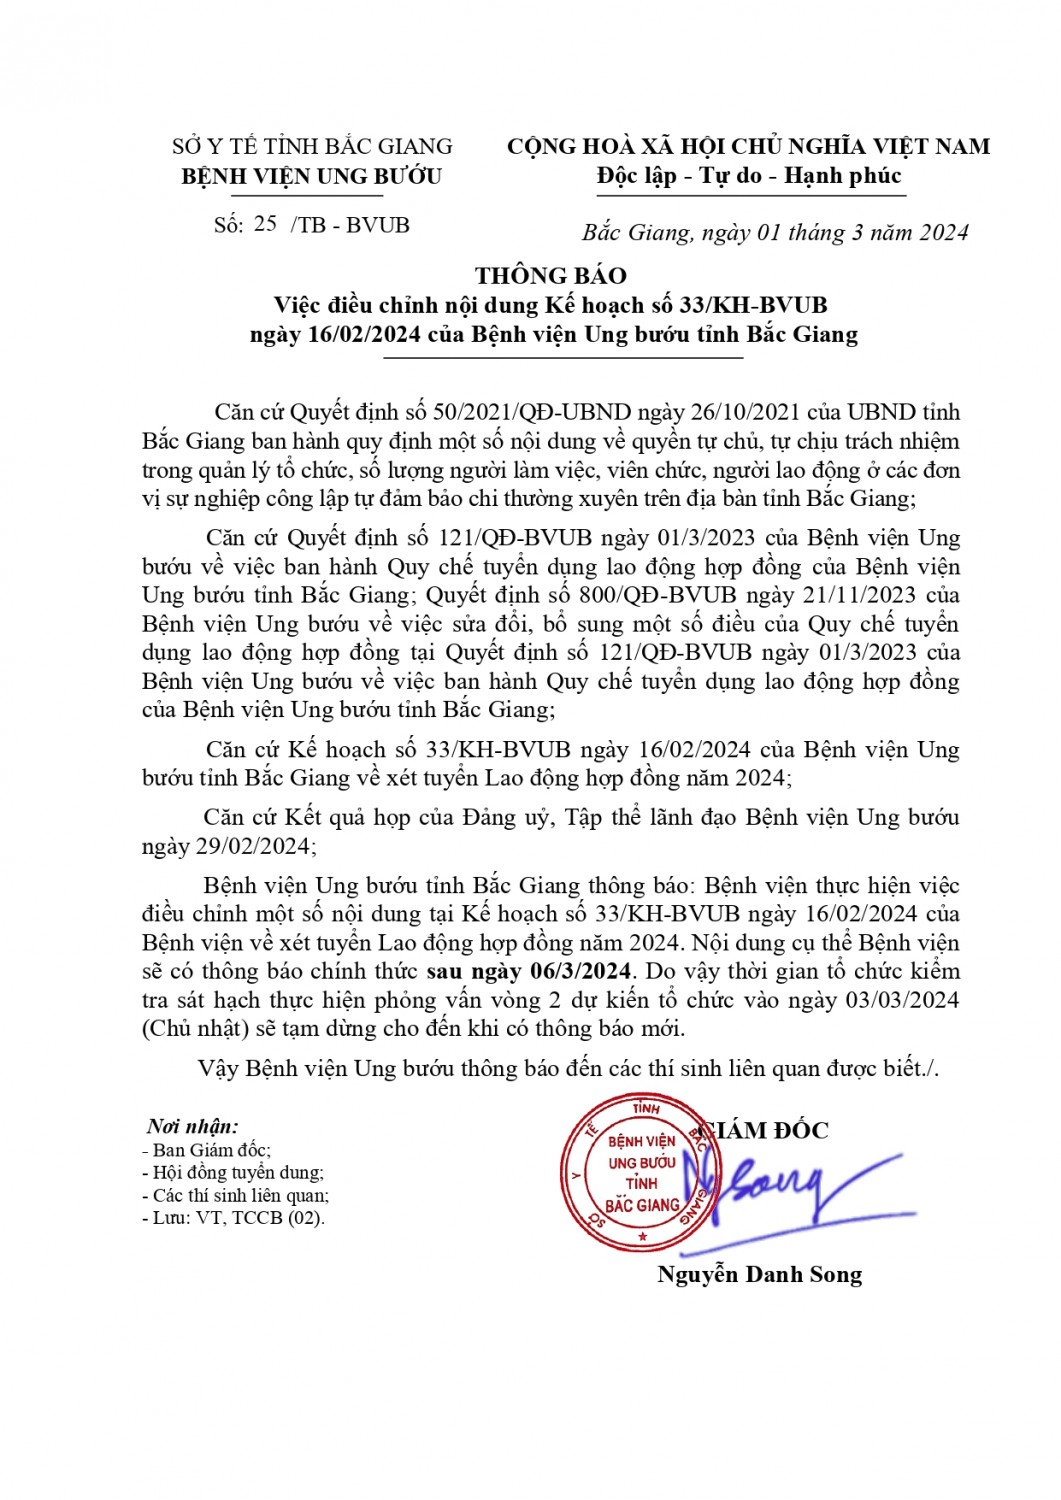 Thông báo Việc điều chỉnh nội dung Kế hoạch số 33/KH-BVUB ngày 16/02/2024 của Bệnh viện Ung bướu tỉnh Bắc Giang